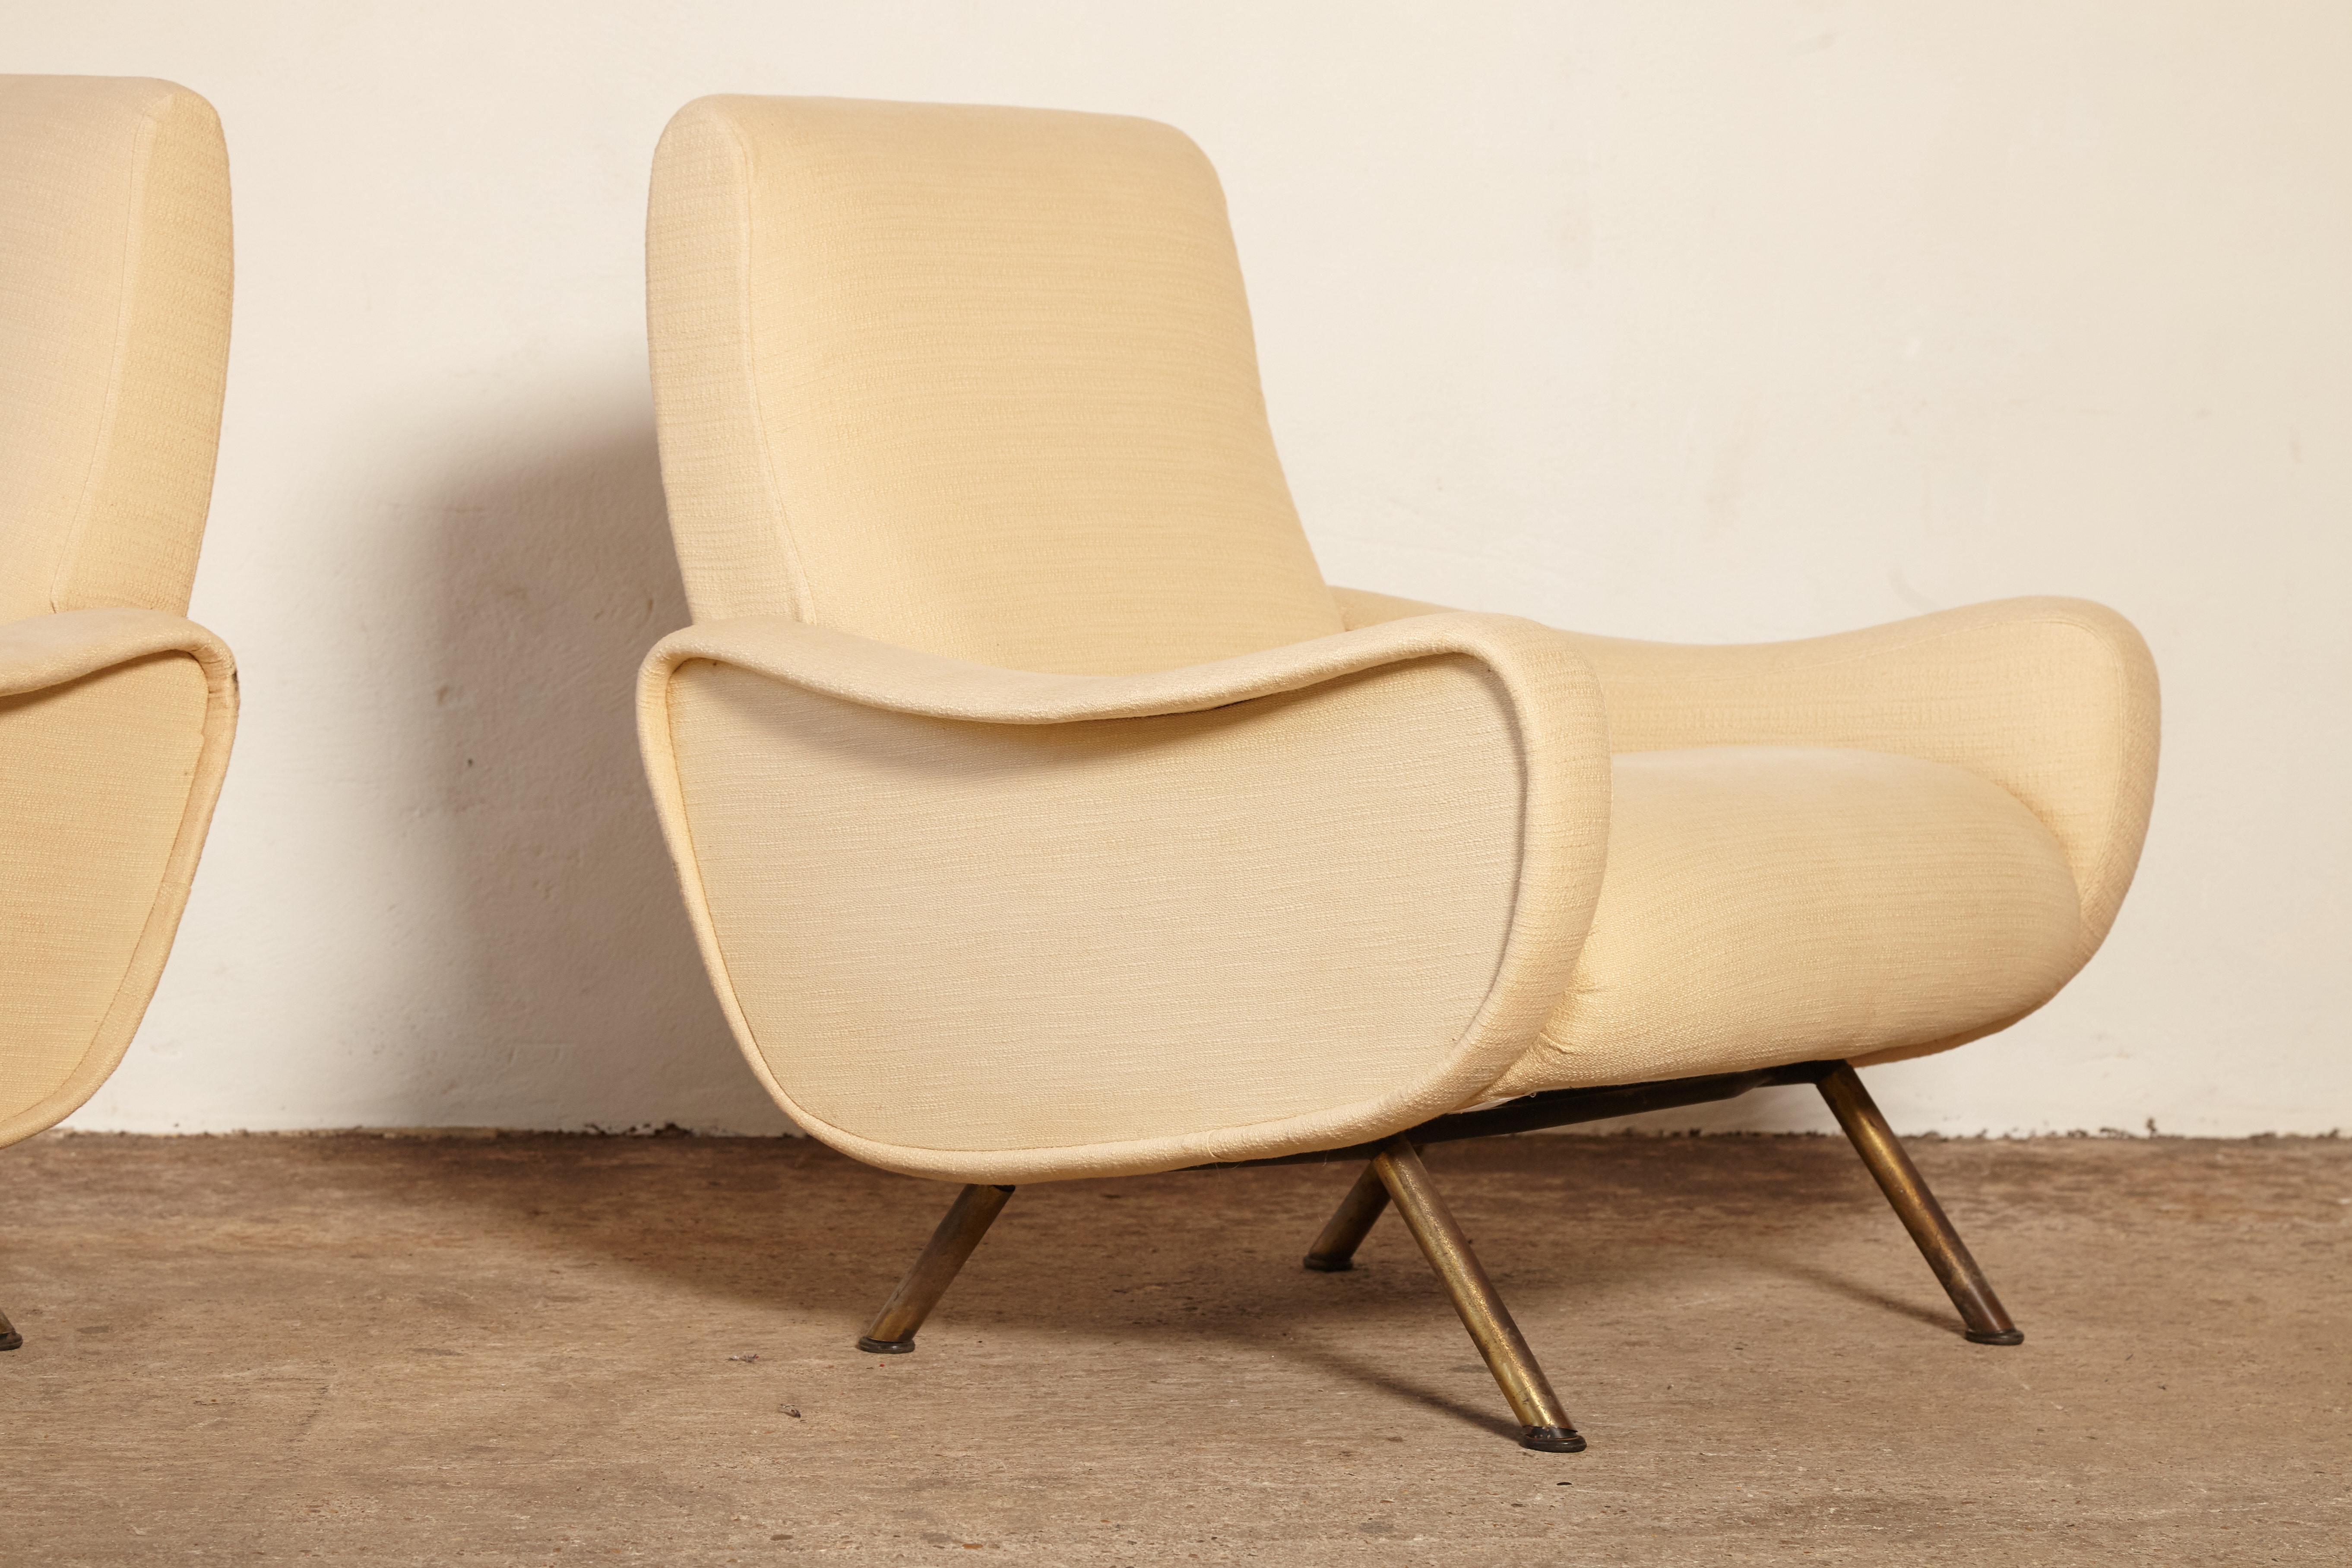 Brass Marco Zanuso Lady Chairs, Arflex, Italy, 1960s-1970s